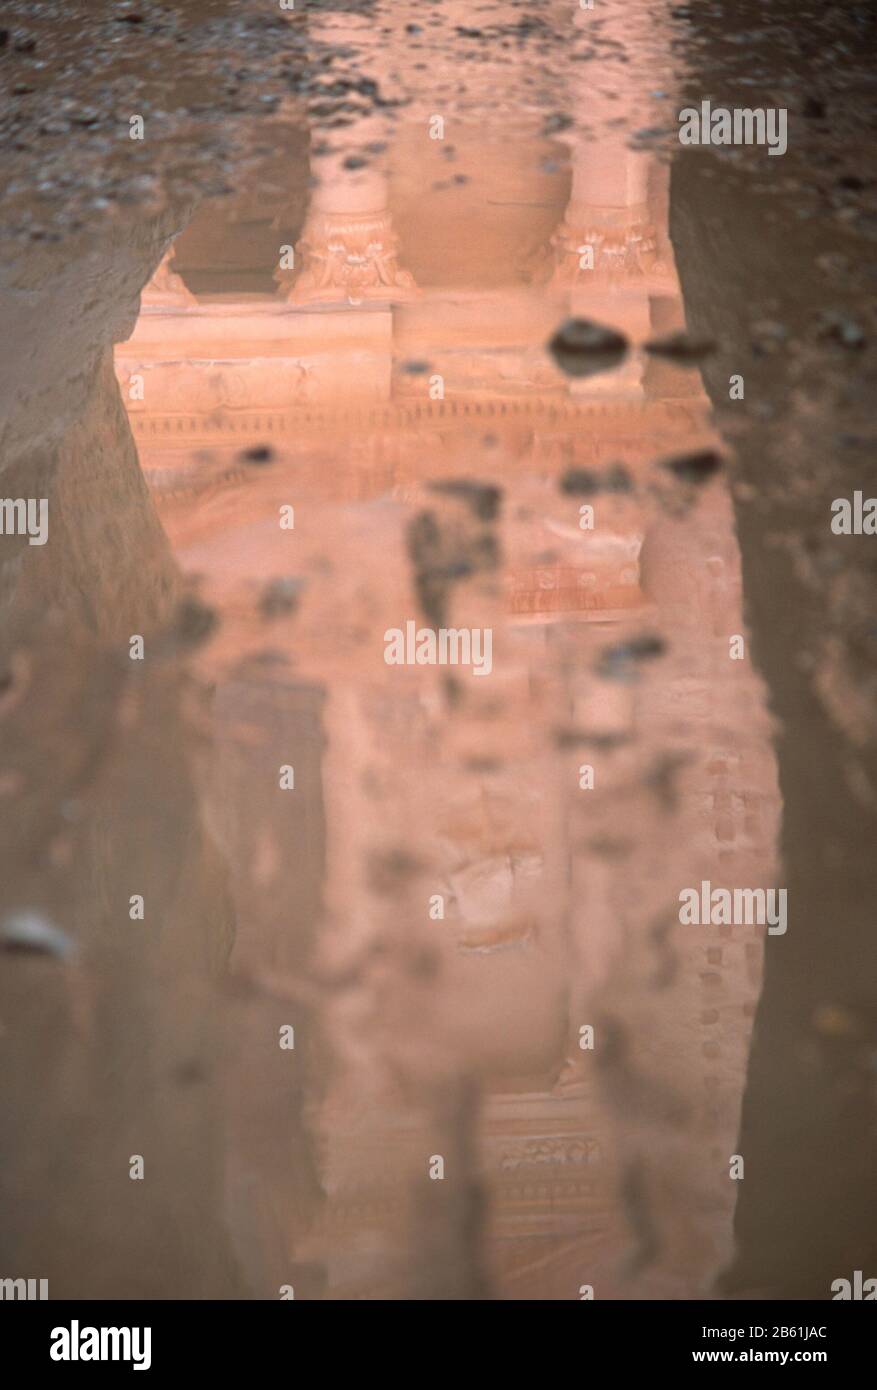 Il Tesoro (al-Khazneh), Petra, Giordania riflesse dall'acqua sul pavimento del Siq. Petra è un sito patrimonio dell'umanità dell'UNESCO. Foto Stock